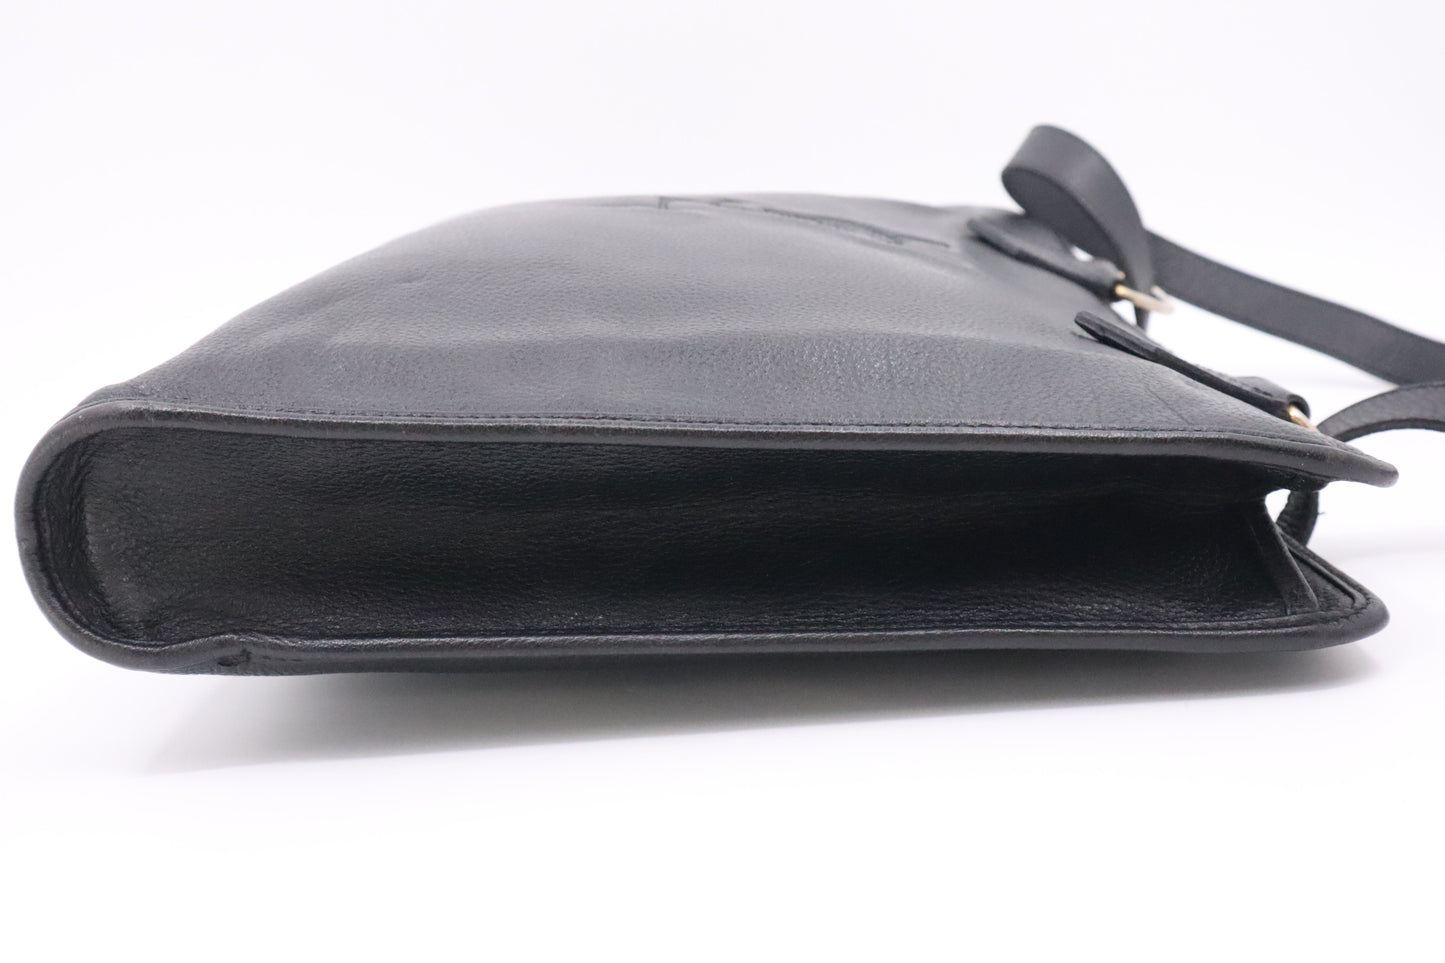 YSL Saint Laurent Shoulder Bag in Black Leather